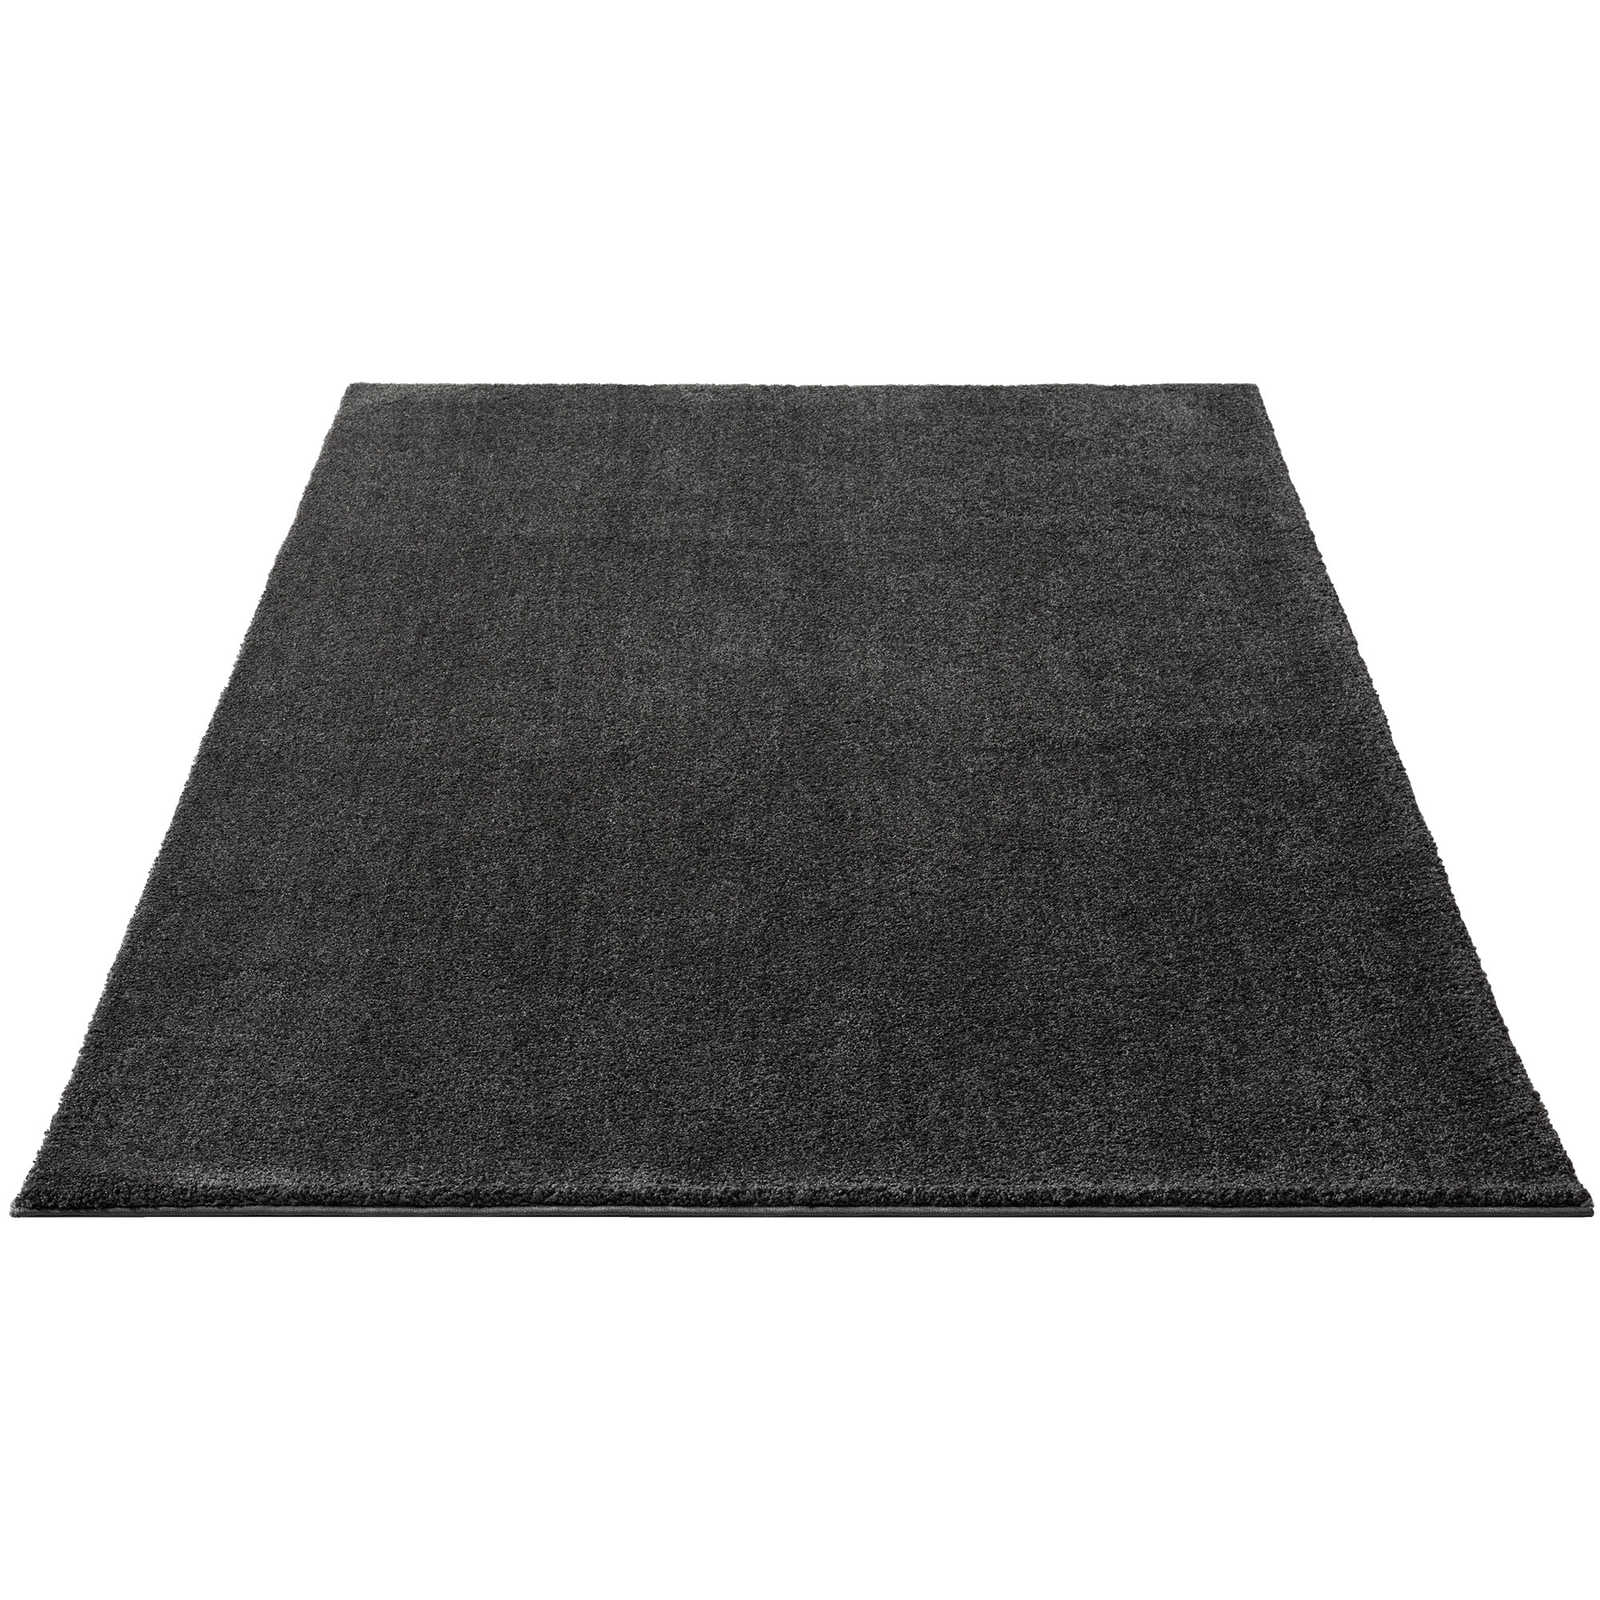 Zacht kortpolig tapijt in antraciet - 290 x 200 cm
